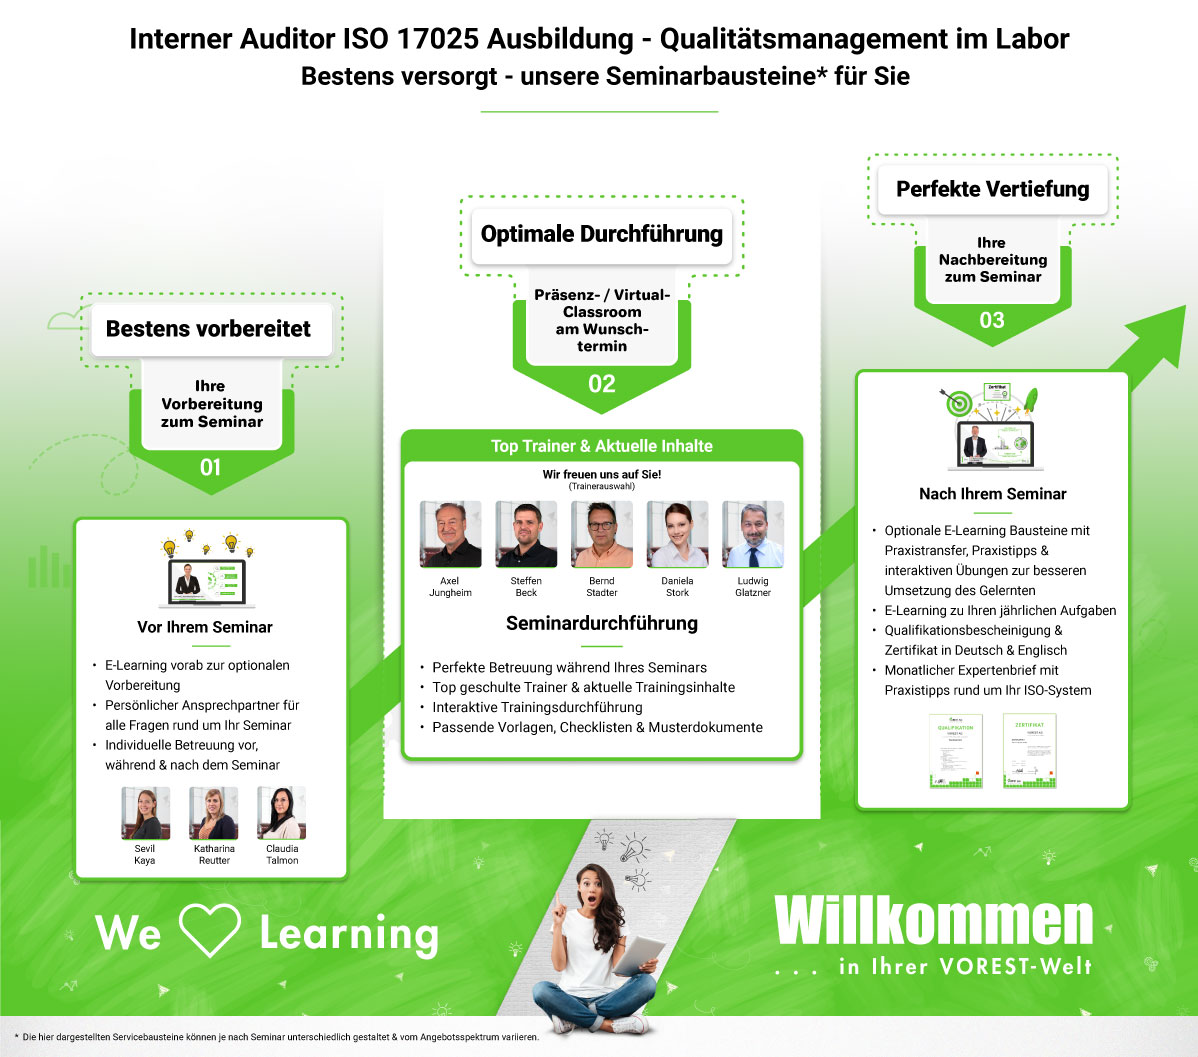 Interner Auditor ISO 17025 Ausbildung - Qualitätsmanagement im Labor